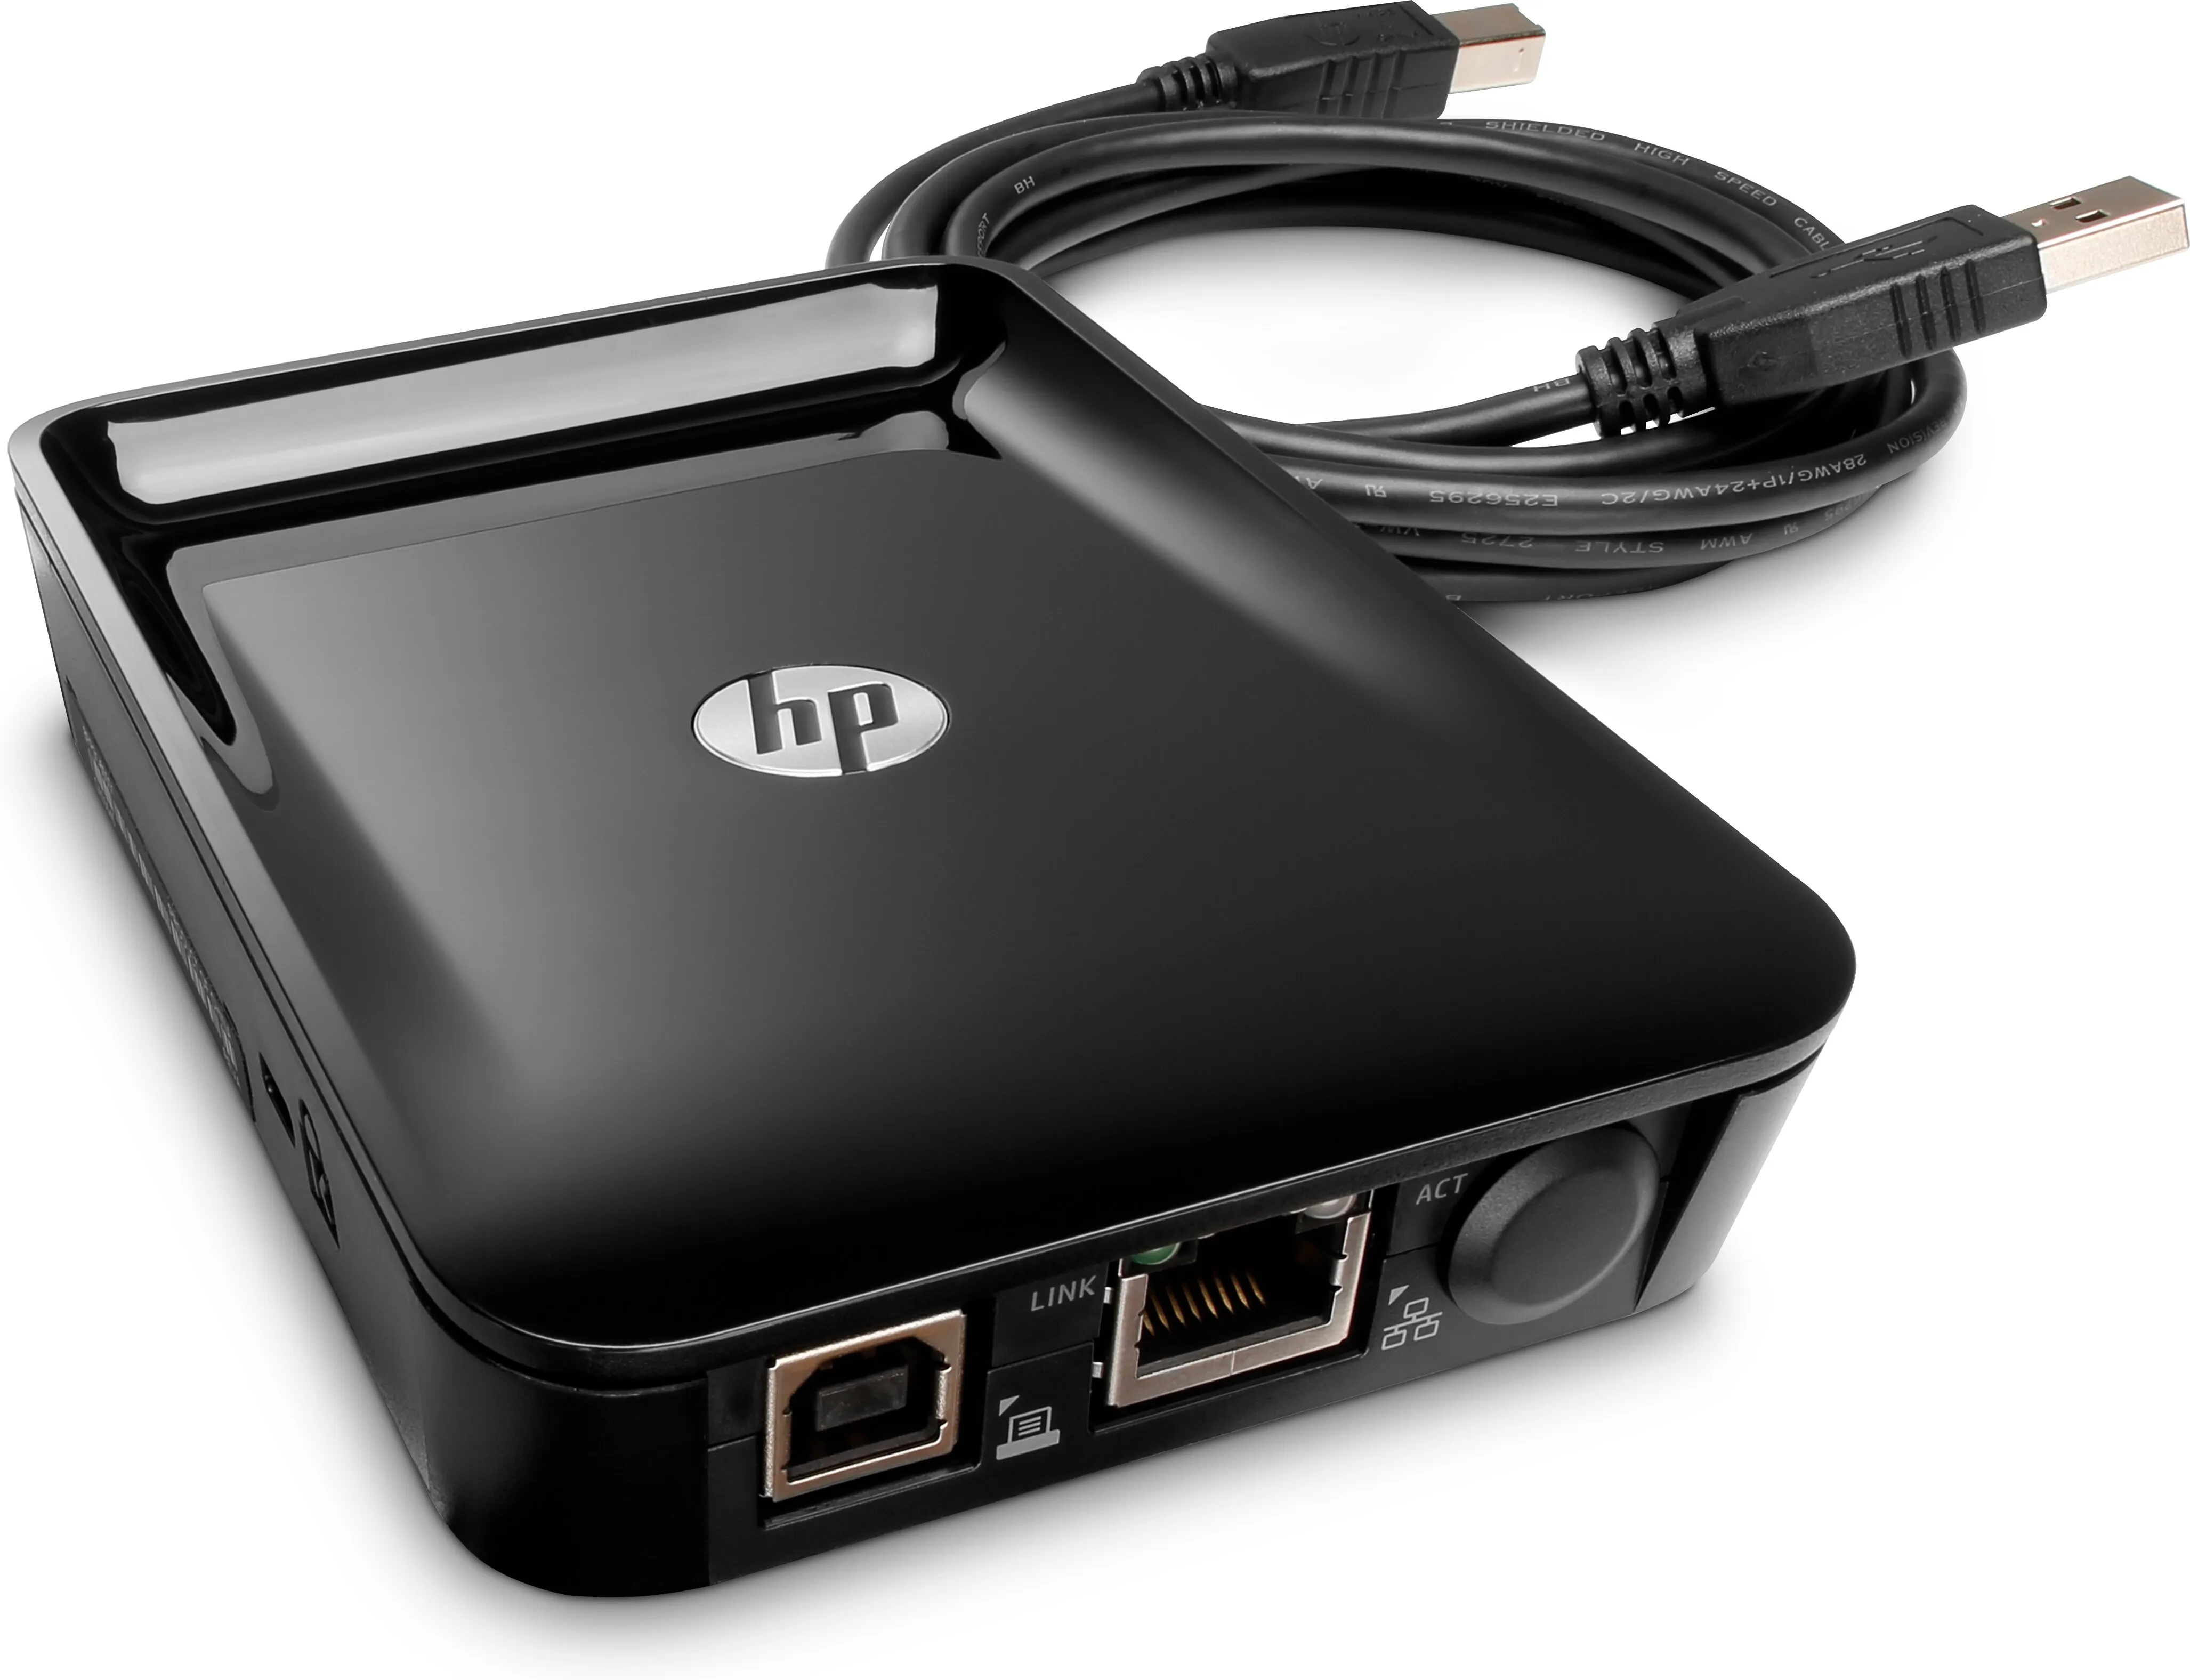 Vente HP Jetdirect LAN Accessory HP au meilleur prix - visuel 6